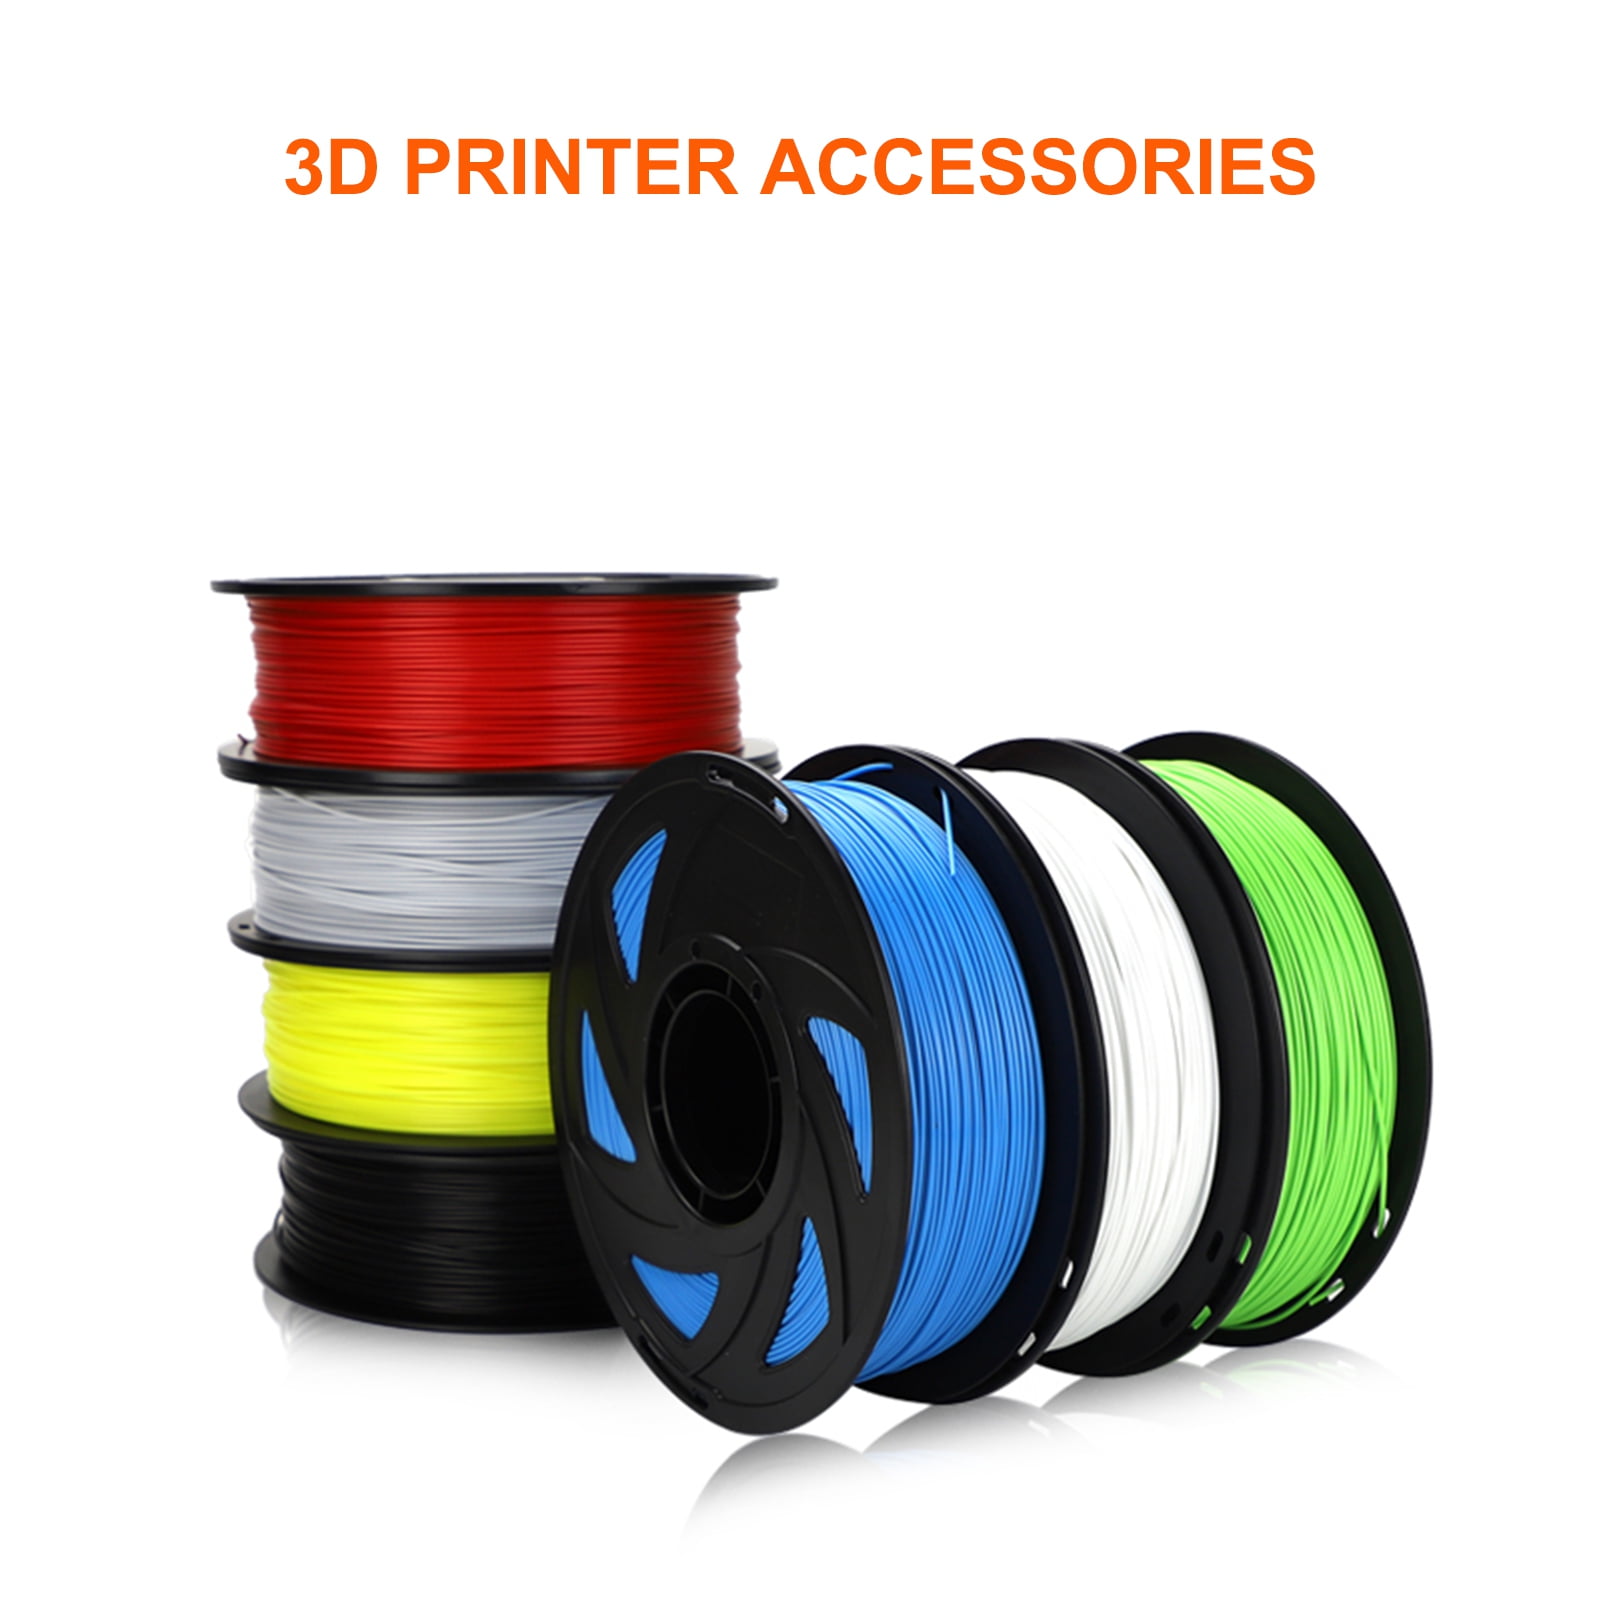 3D Pen Filament 10 Colors 160 Feet, Tomight PLA Filament 1.75mm  High-Precision Diameter - 3D Pen/3D Printer Filament Refills for 3D Pen 